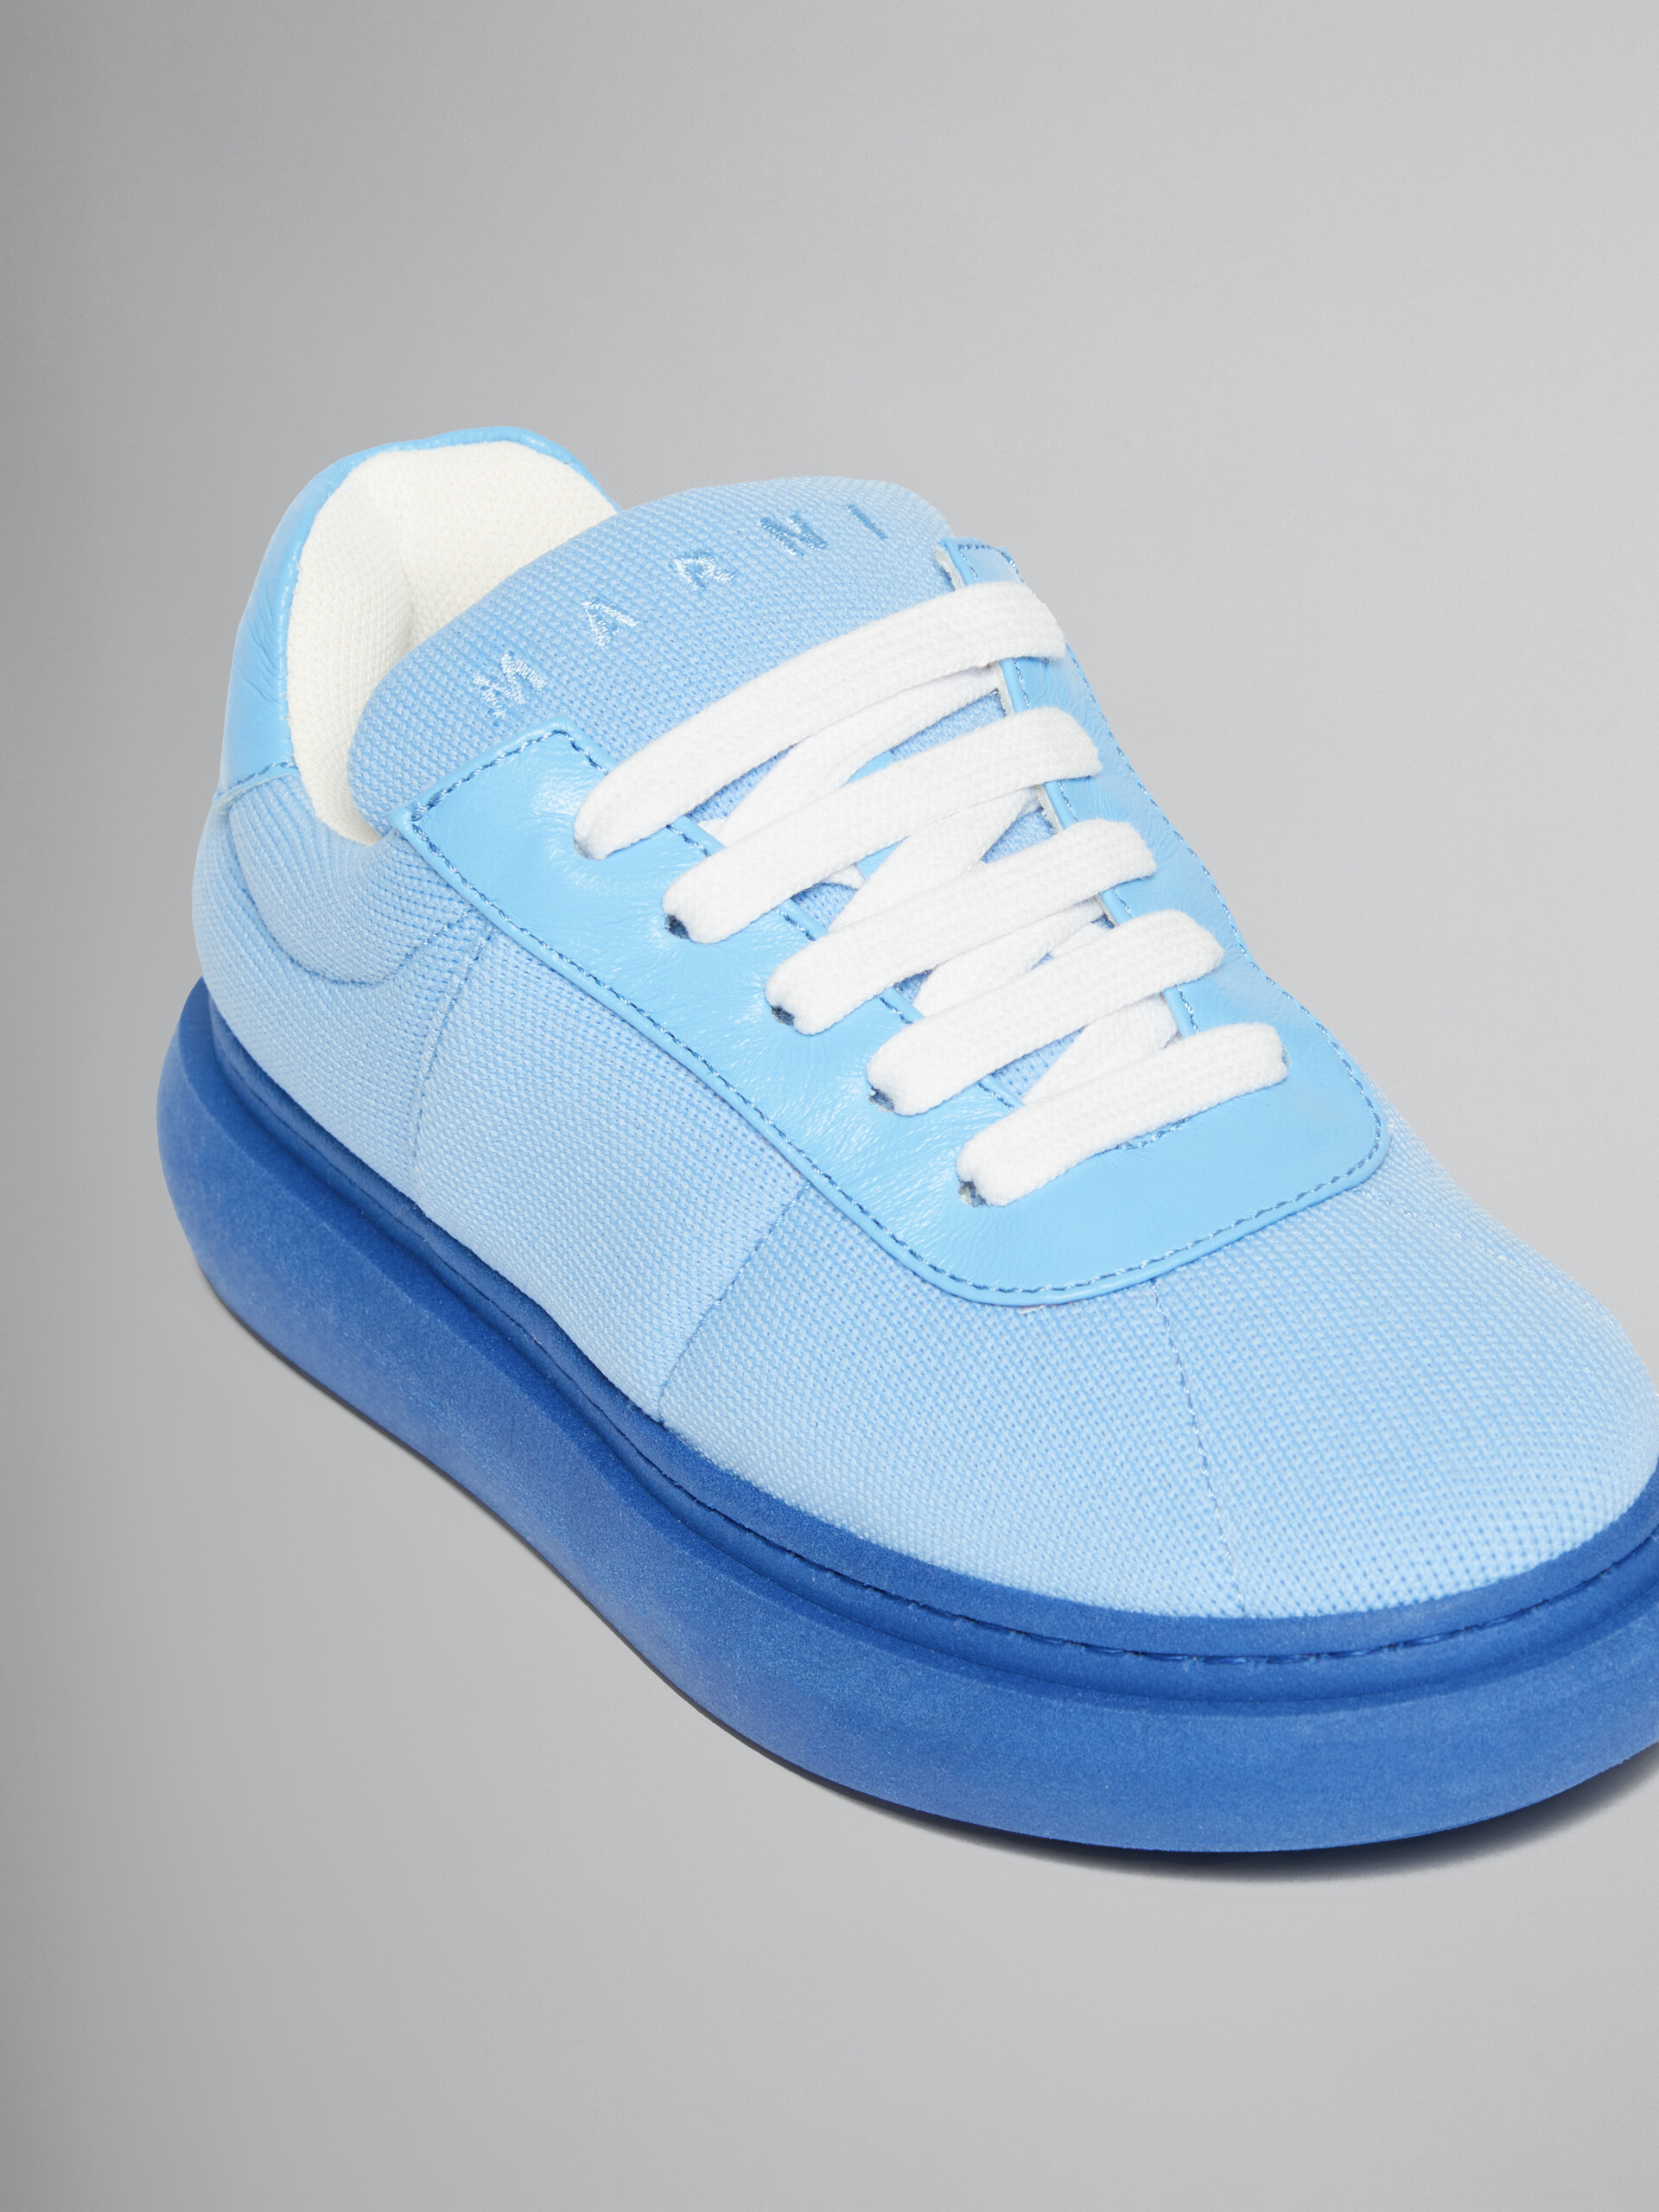 Hellblaue Sneakers aus gepolstertem Leder - KINDER - Image 4